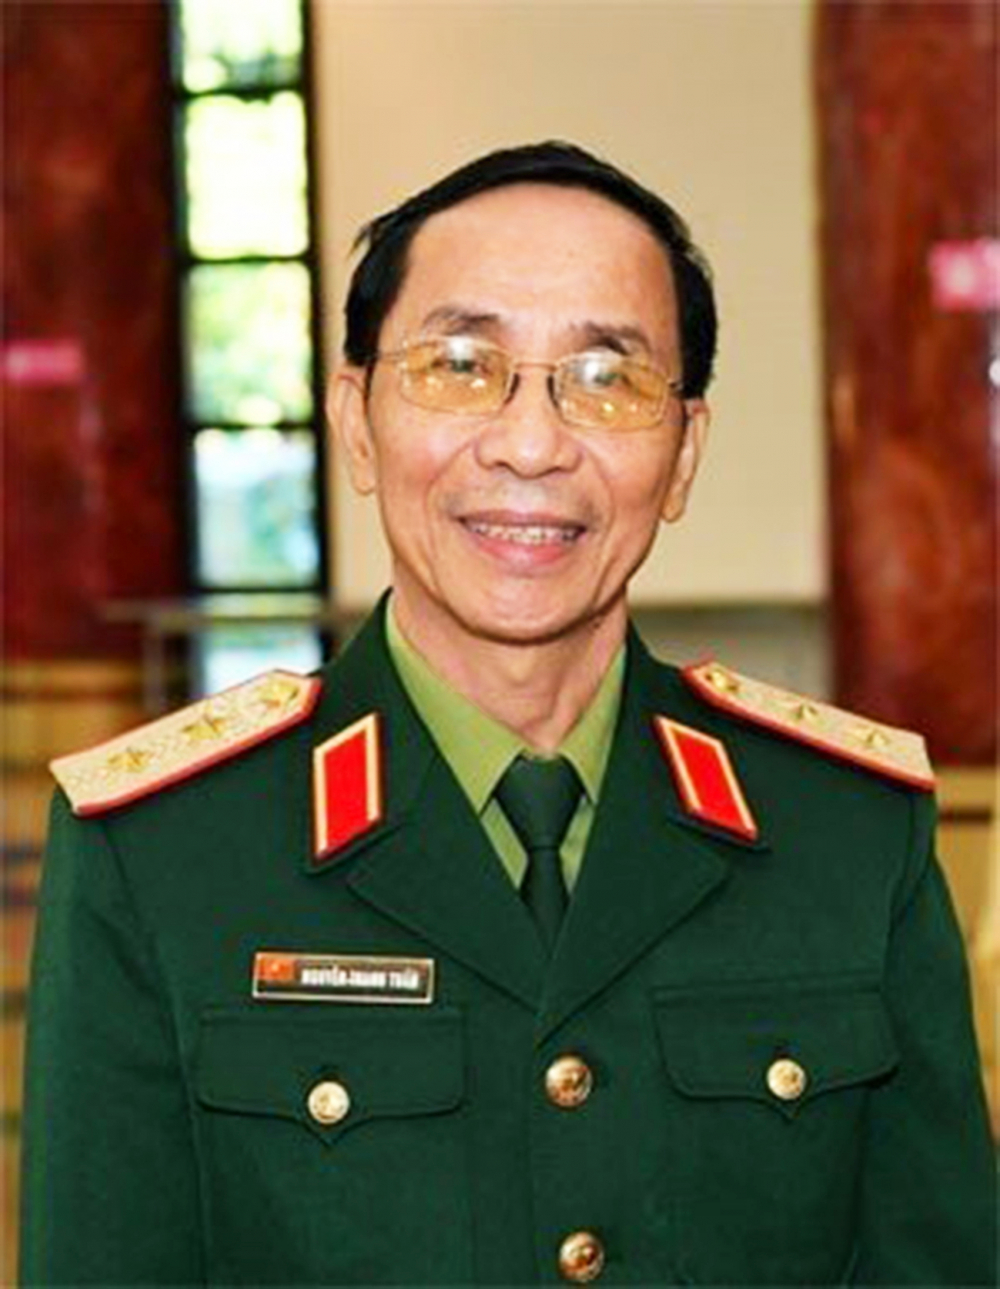  Trung tướng Nguyễn Thanh Tuấn - nguyên Cục trưởng Cục Tuyên huấn, Tổng cục Chính trị Quân đội nhân dân Việt Nam